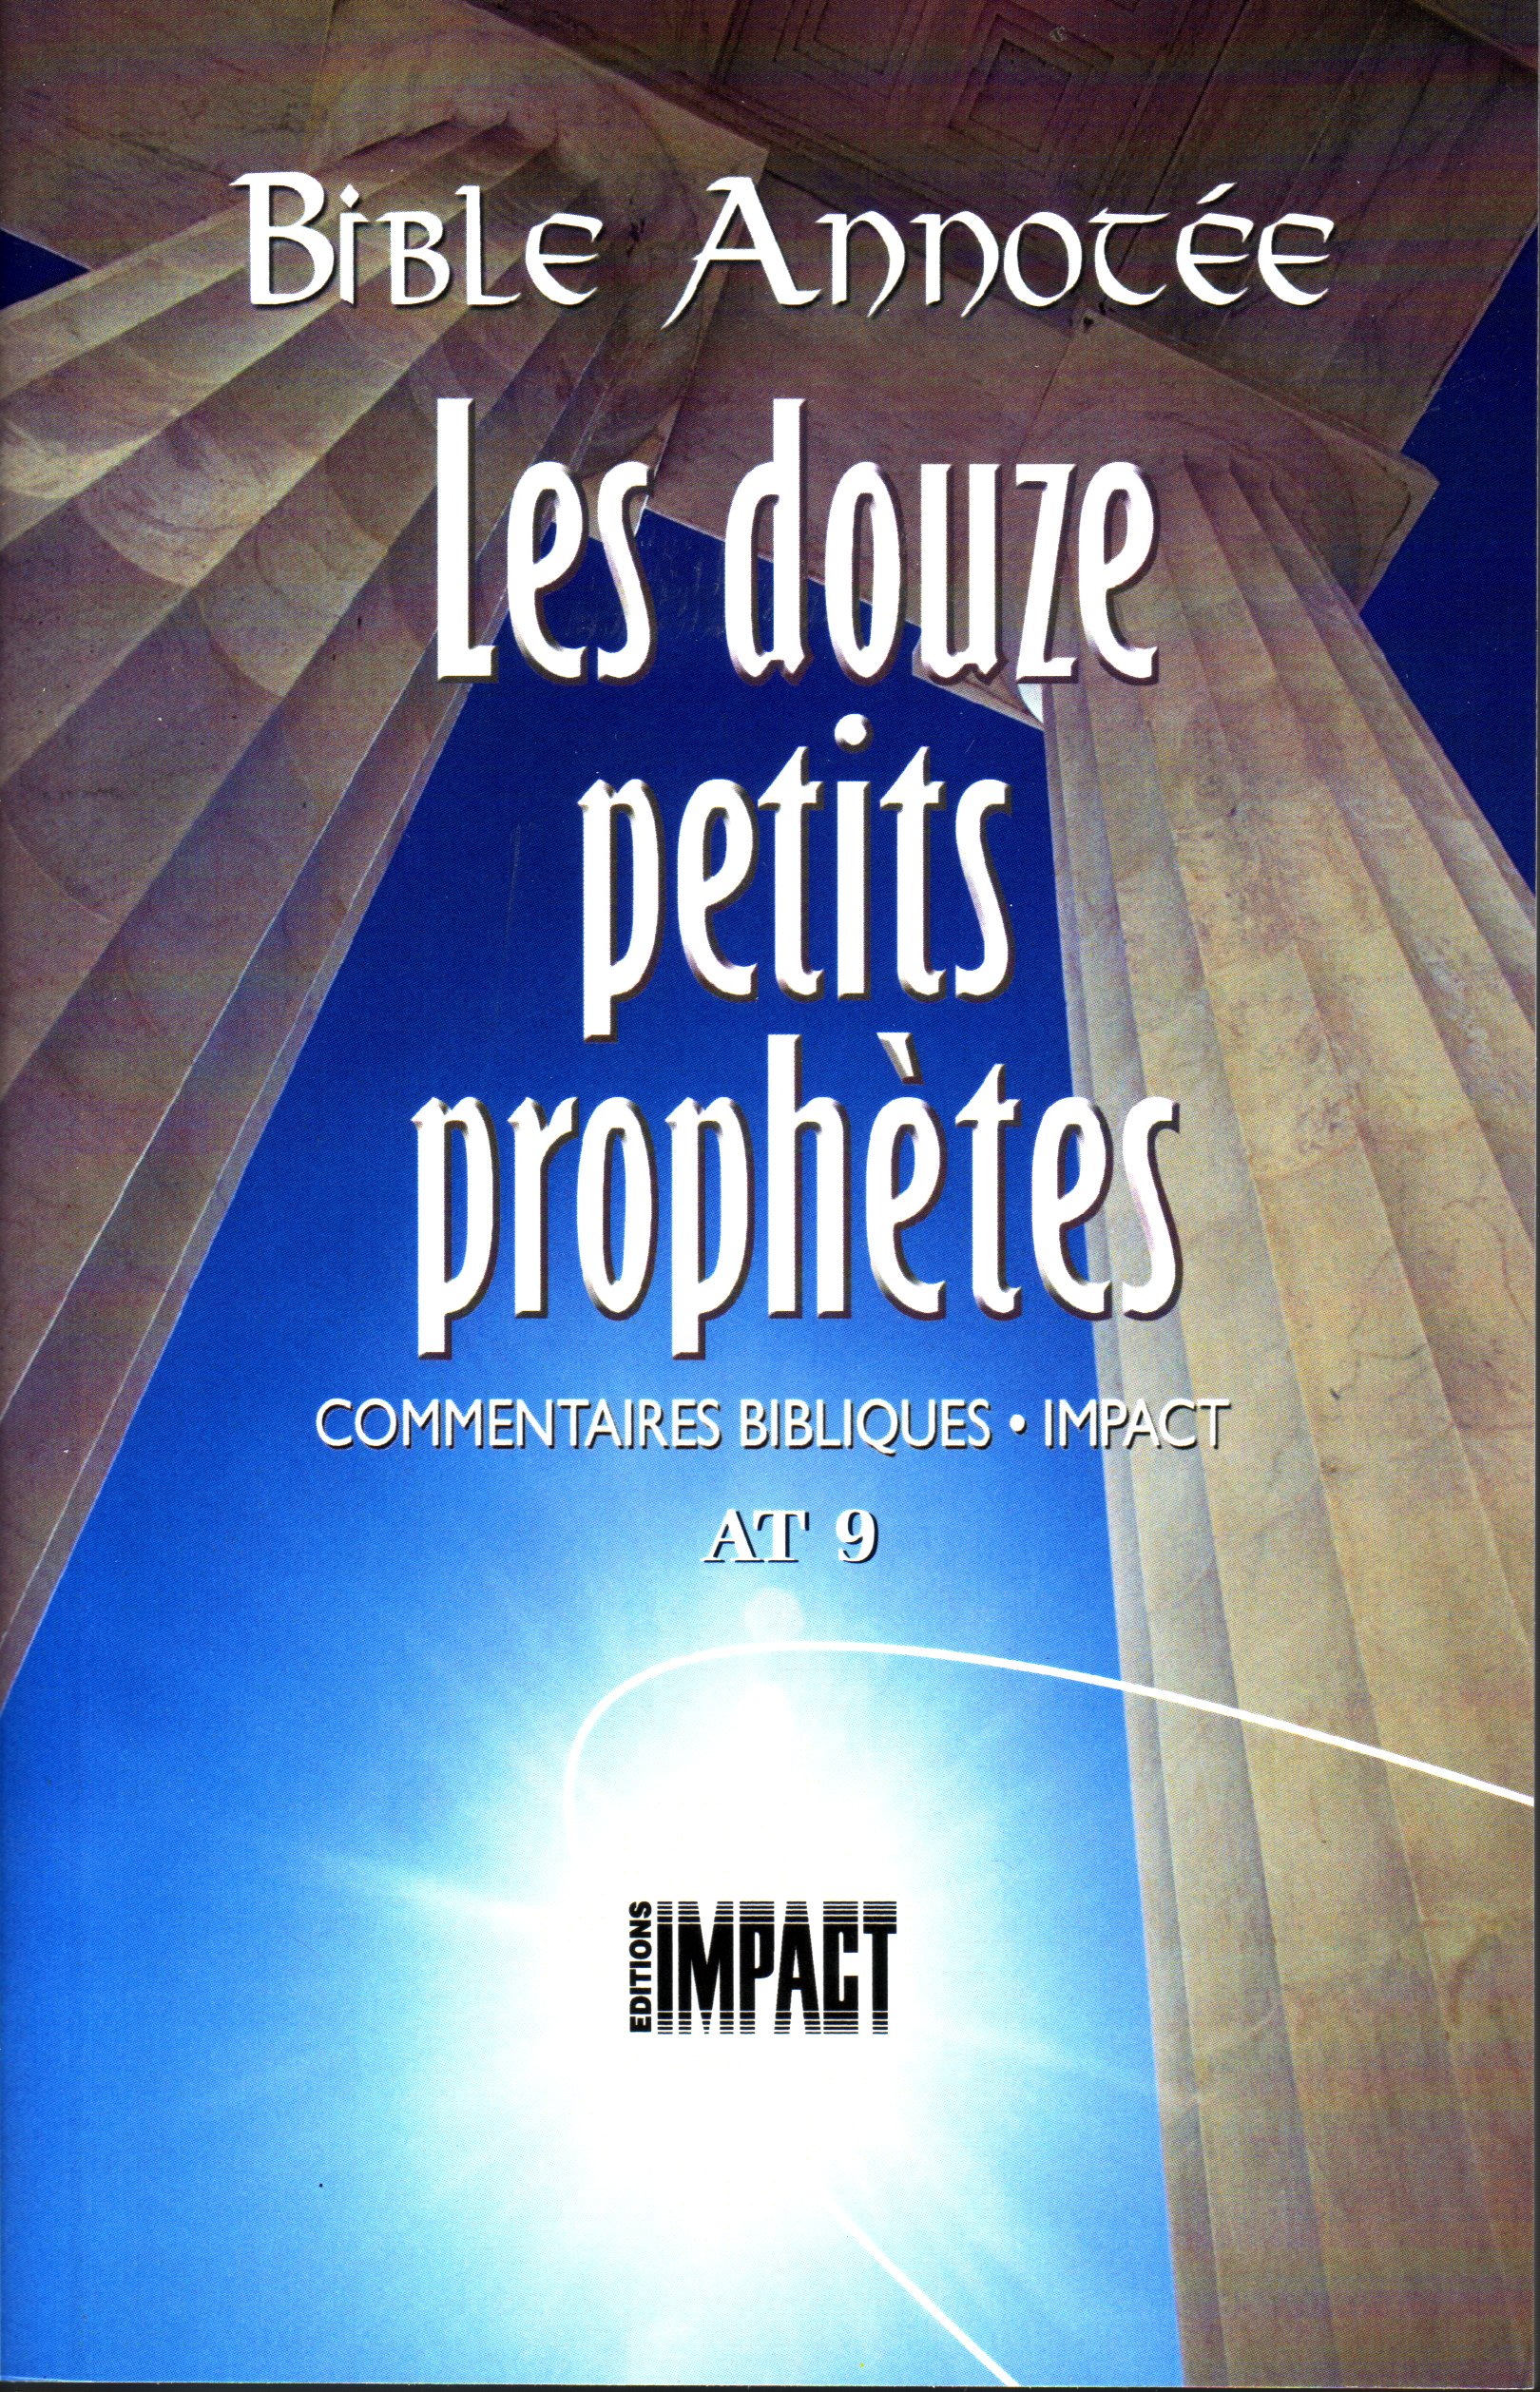 Bible Annotée - les douze petits prophètes (La) - Commentaires bibliques Impact AT 9